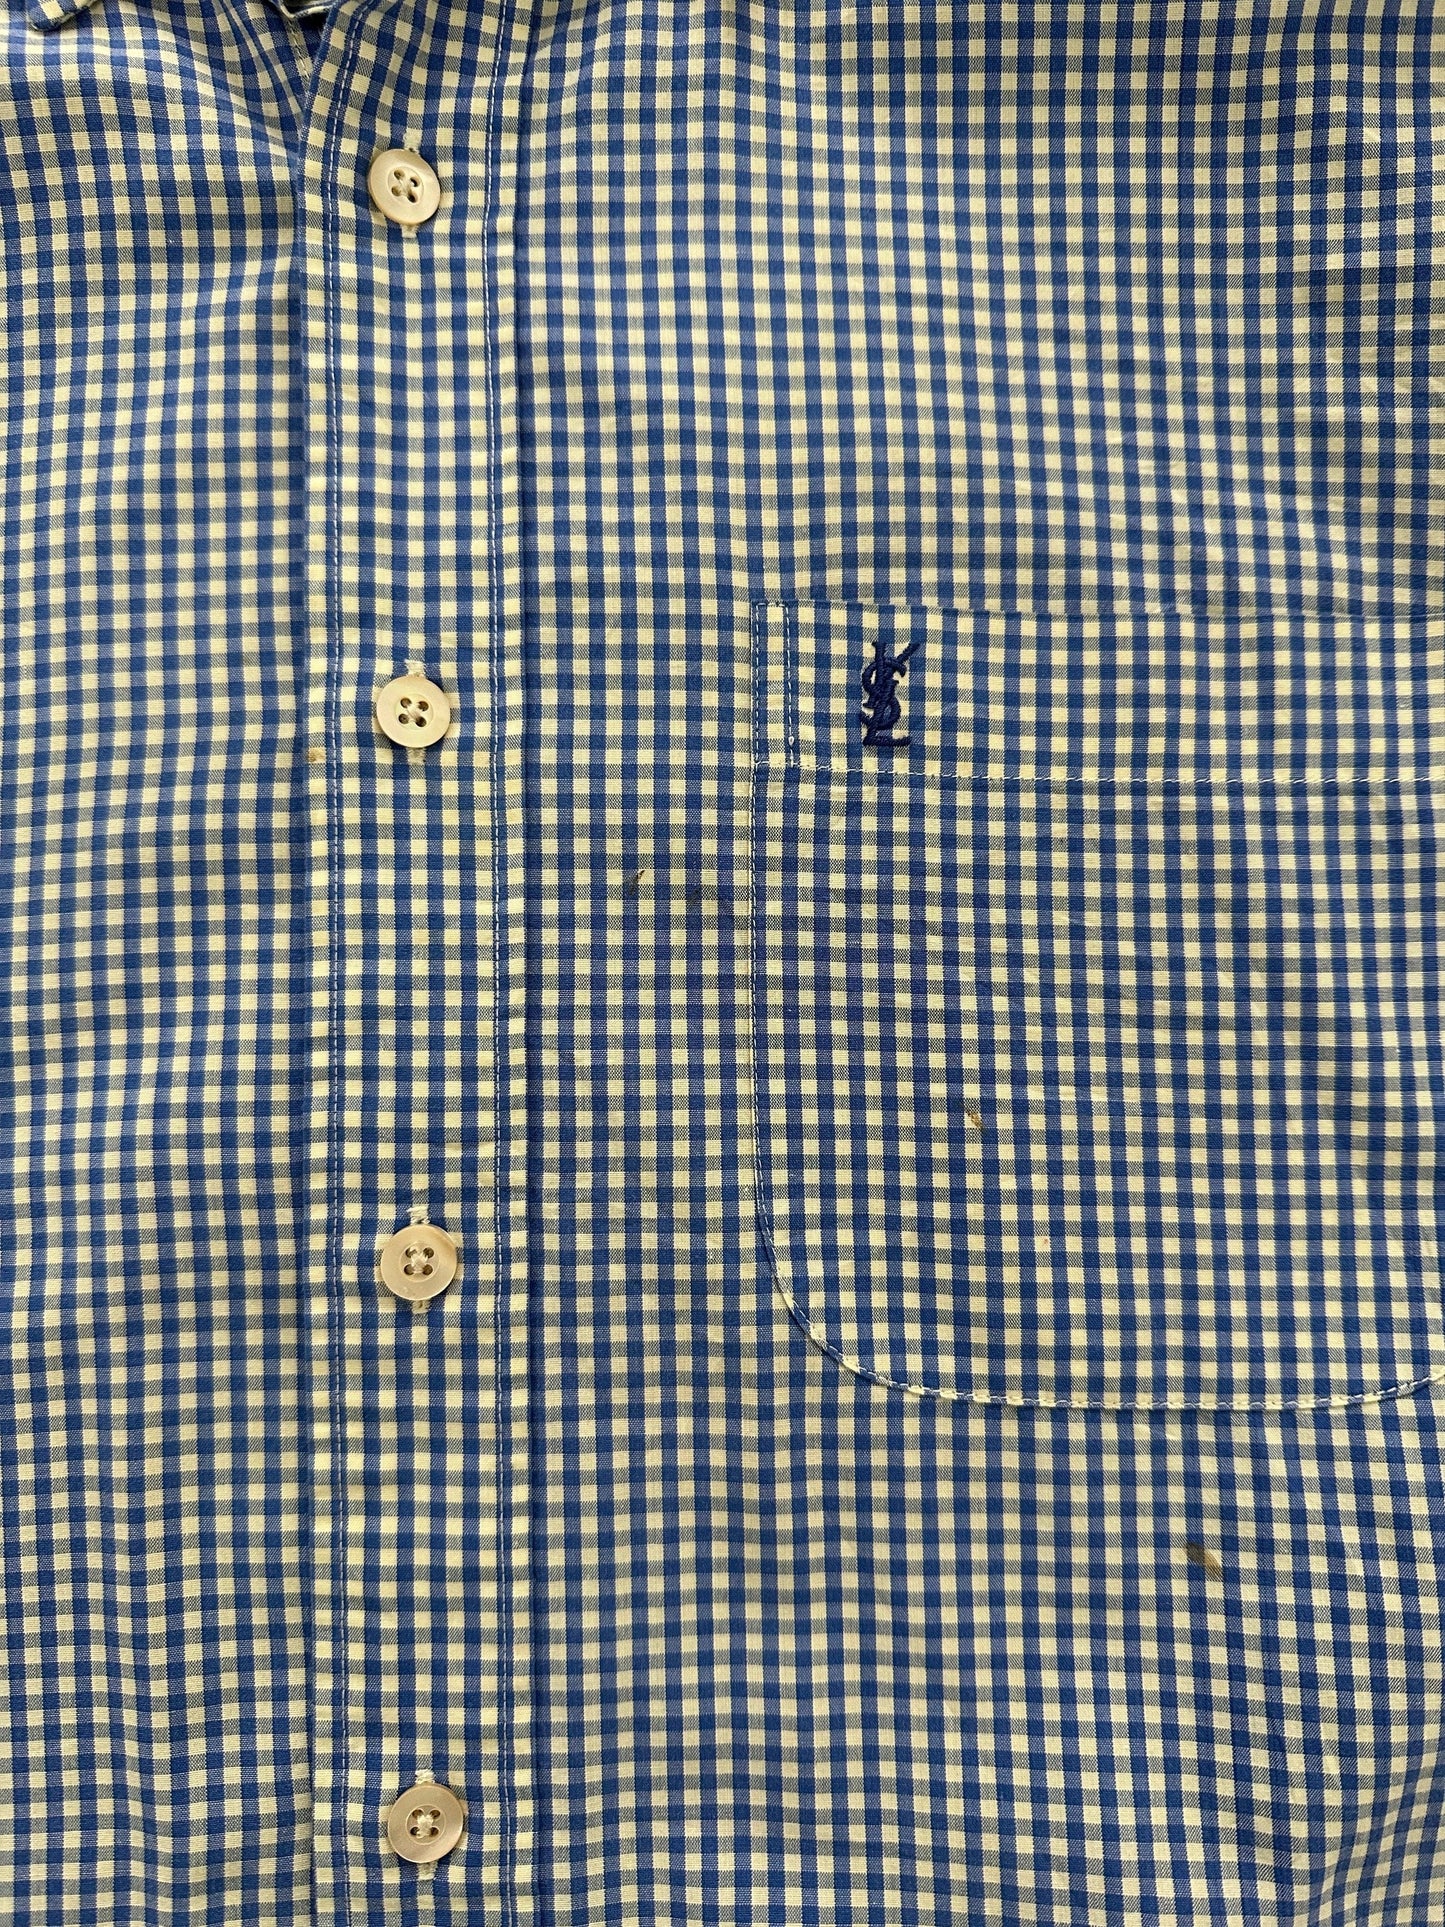 Yves Saint Laurent Check Cotton Logo Shirt - S/M